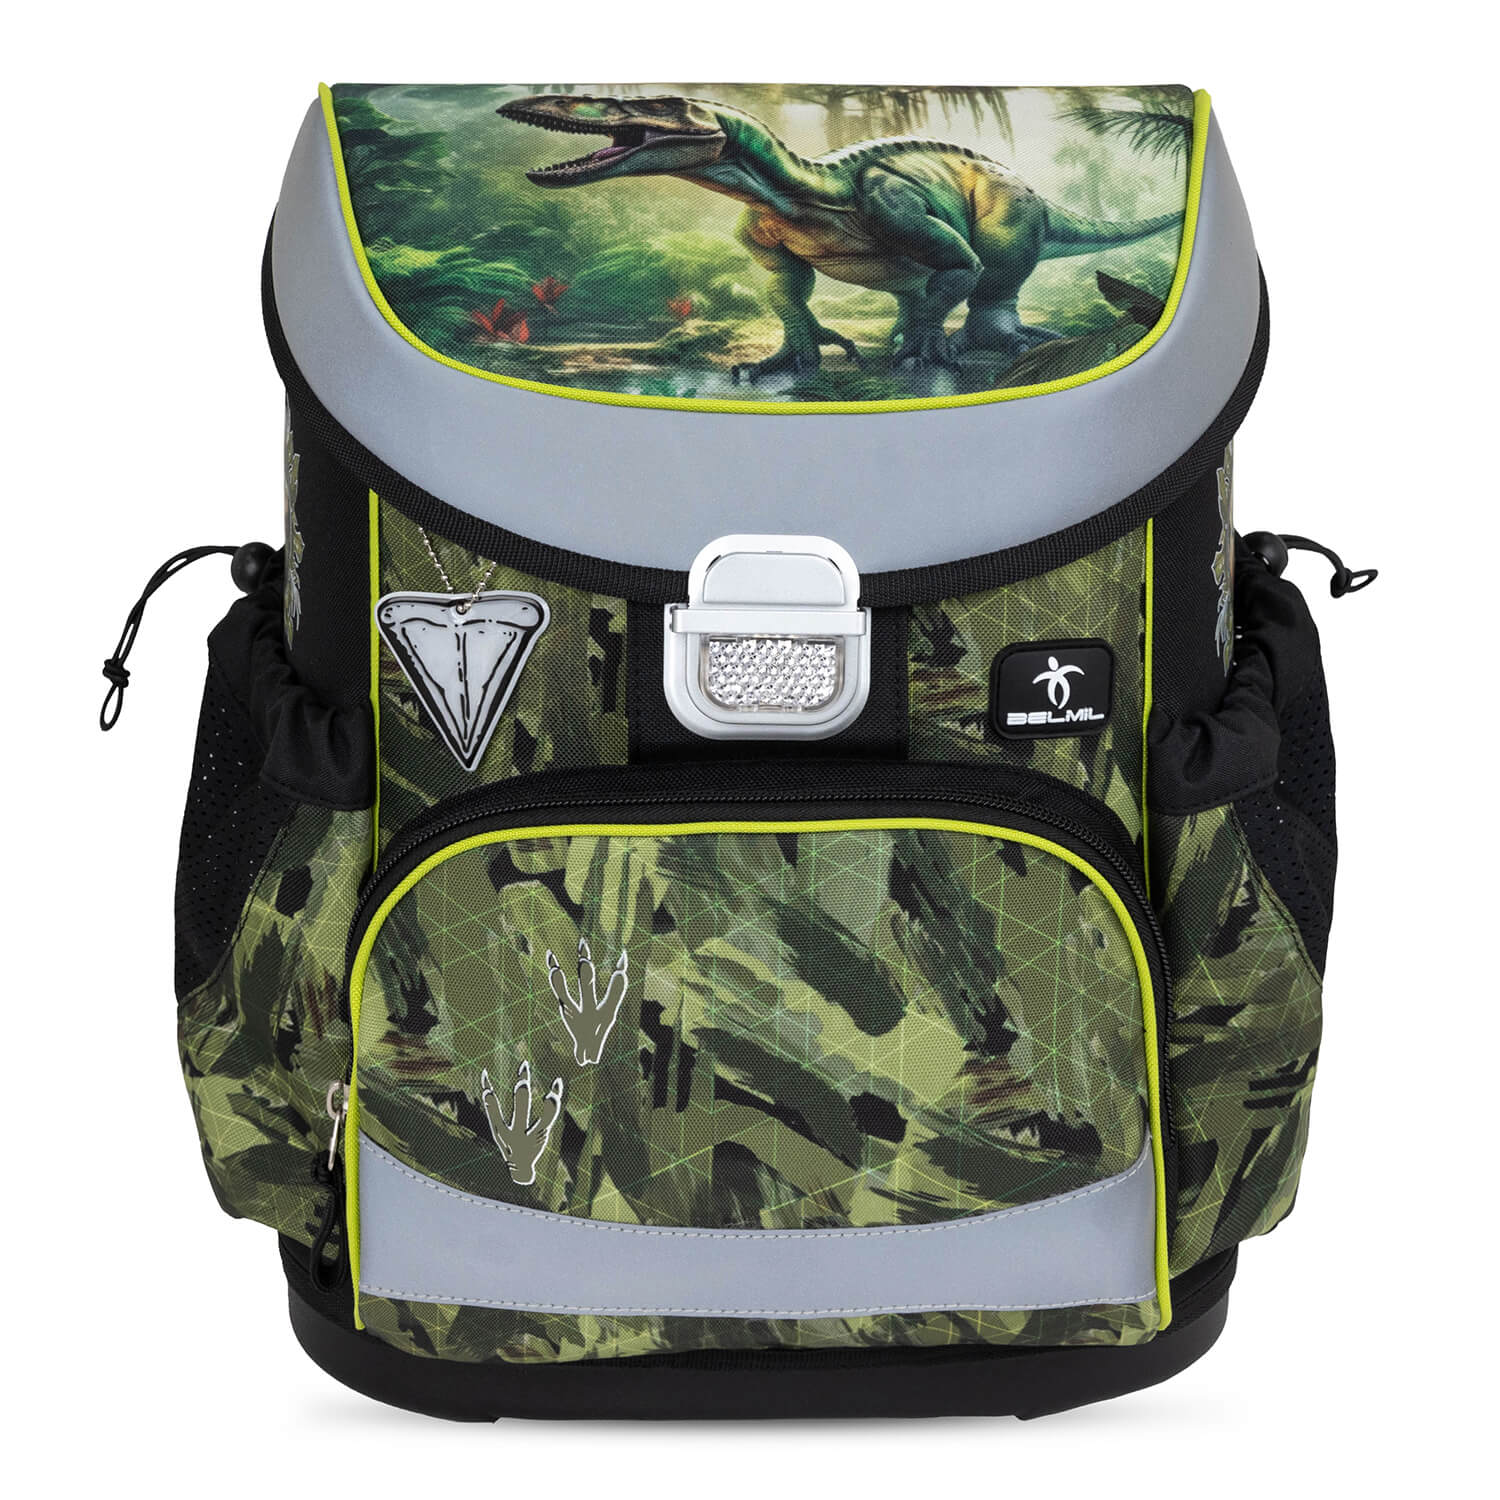 Mini-Fit Lost World schoolbag set 4 pcs